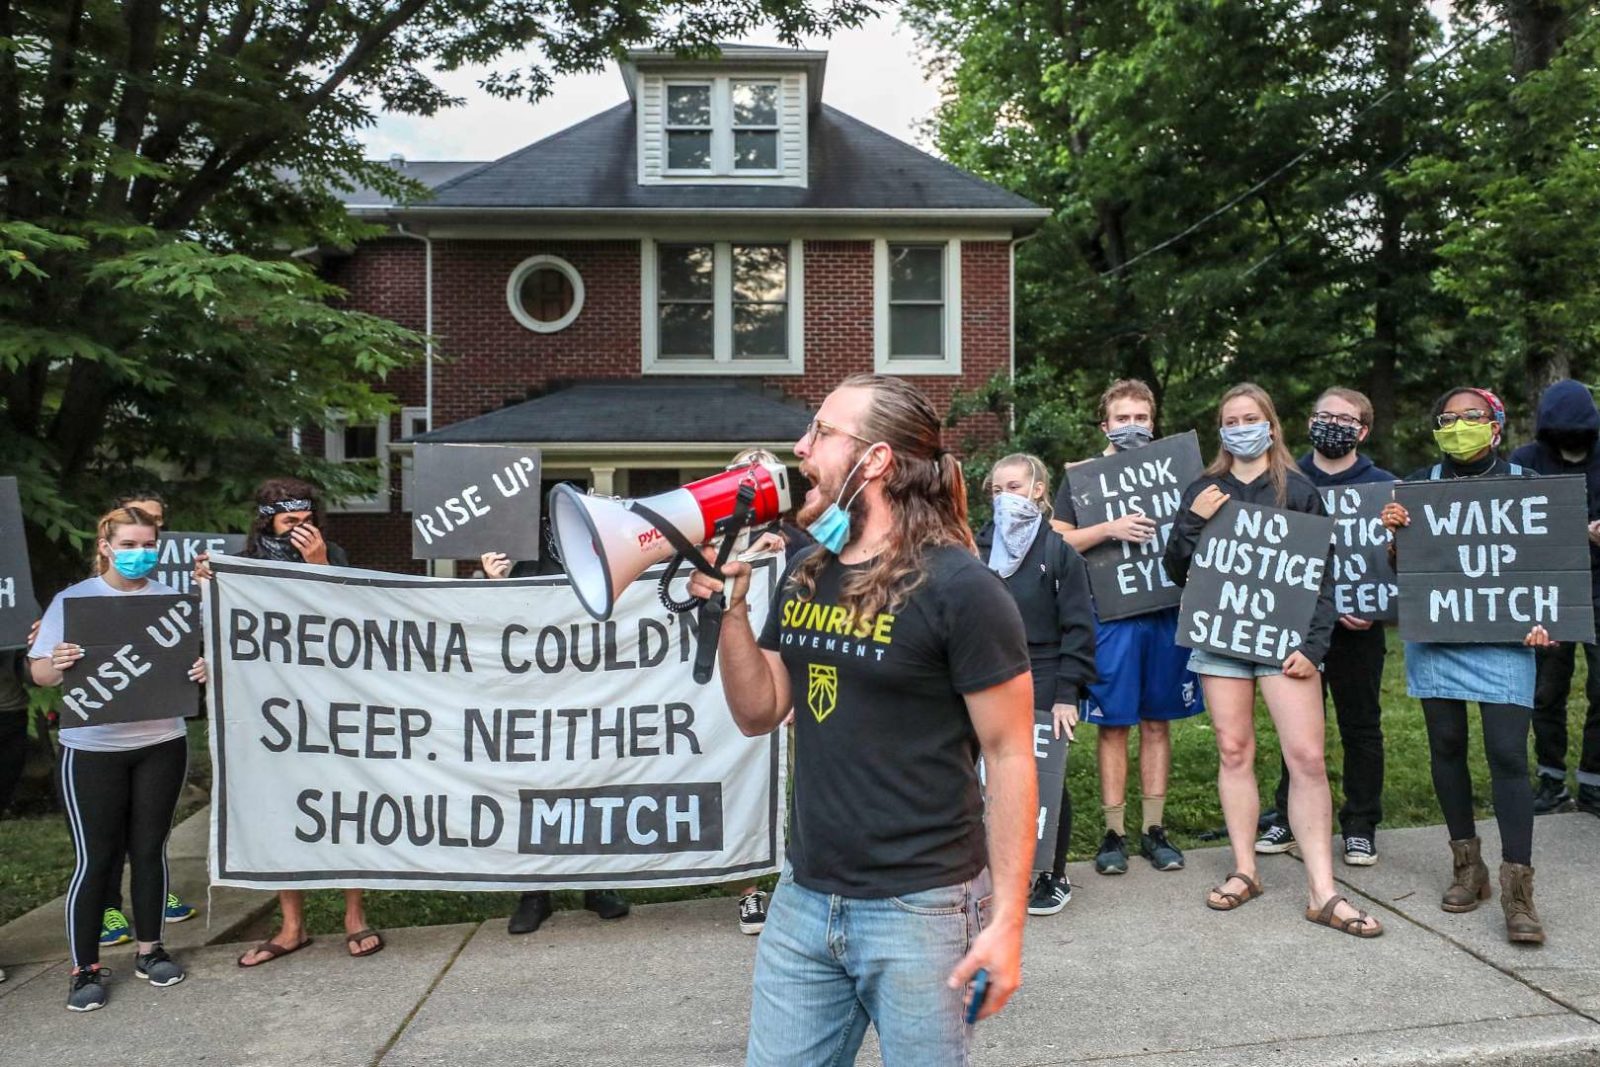 Ein Aktivist von Sunrise spricht in ein Megaphon, während andere Demonstranten vor Mitch McConnells Haus in KY stehen und ein großes Schild mit der Aufschrift "Breonna konnte nicht schlafen. Weder Mitch sollte" halten.